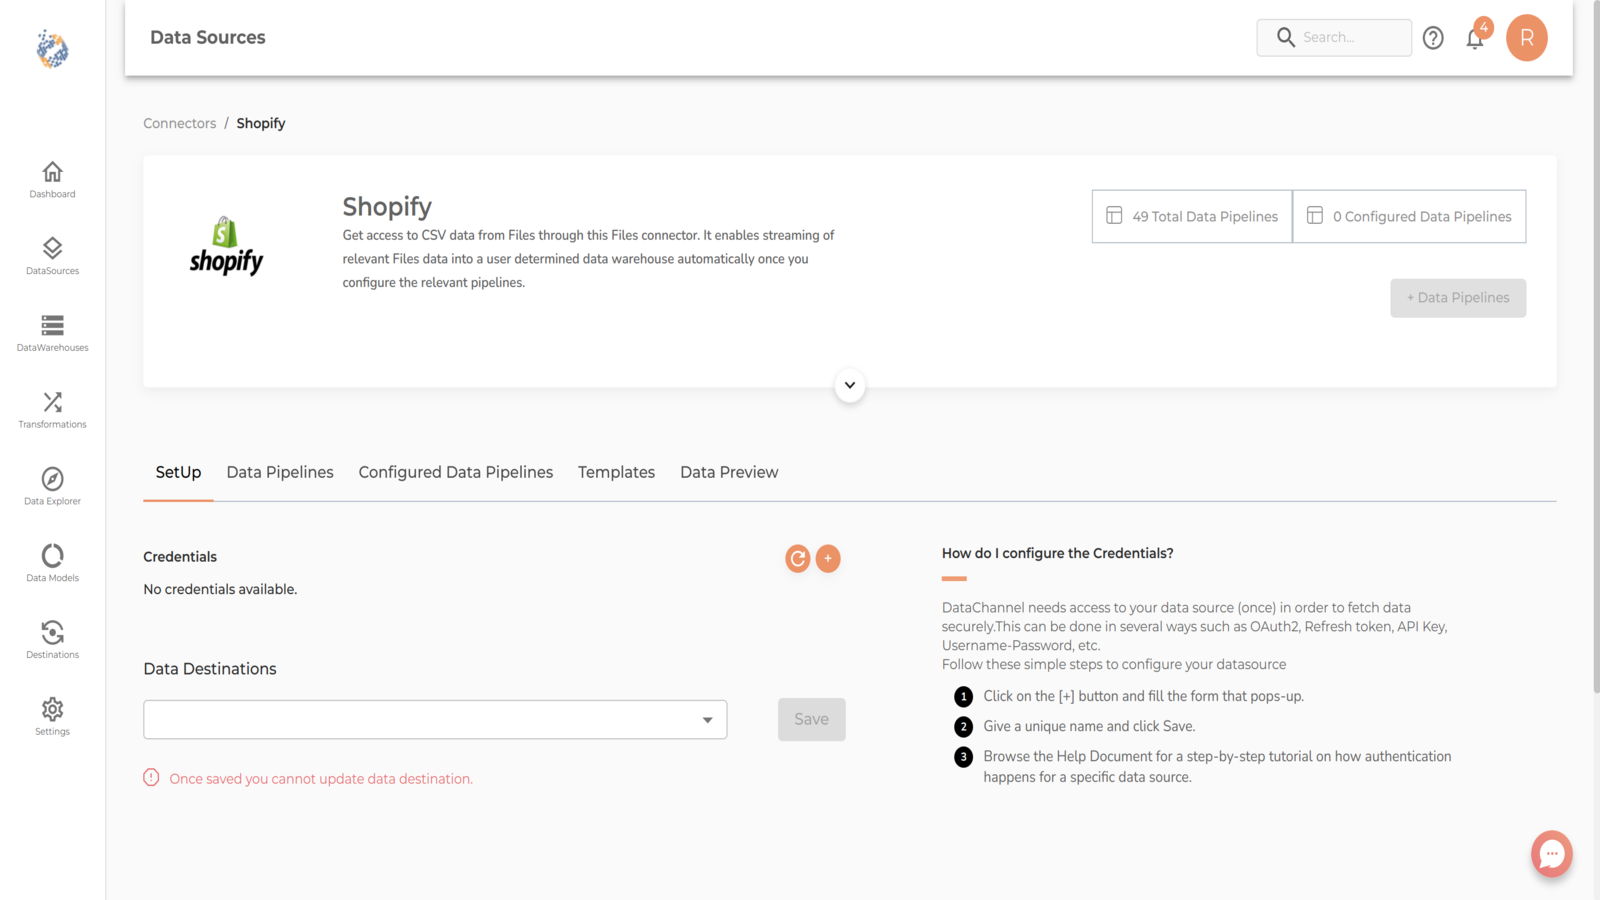 Shopify-kopplingssida för Datachannel.